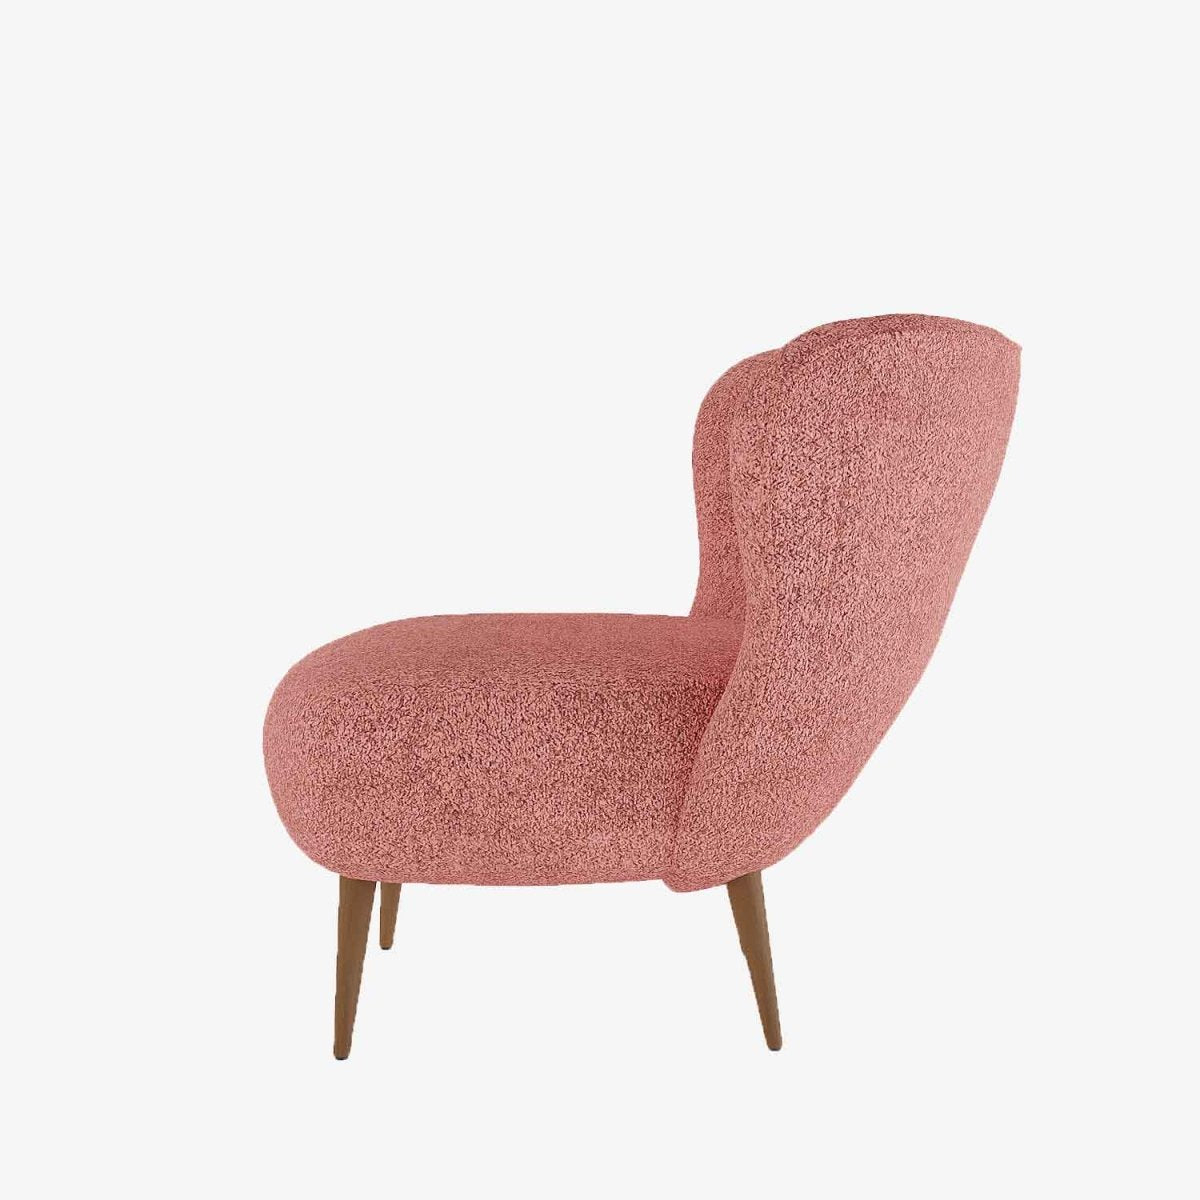 Fauteuil cocktail design en tissu bouclette rose et bois - Potiron Paris, la satisfaciton des assises design confortables et pas chères